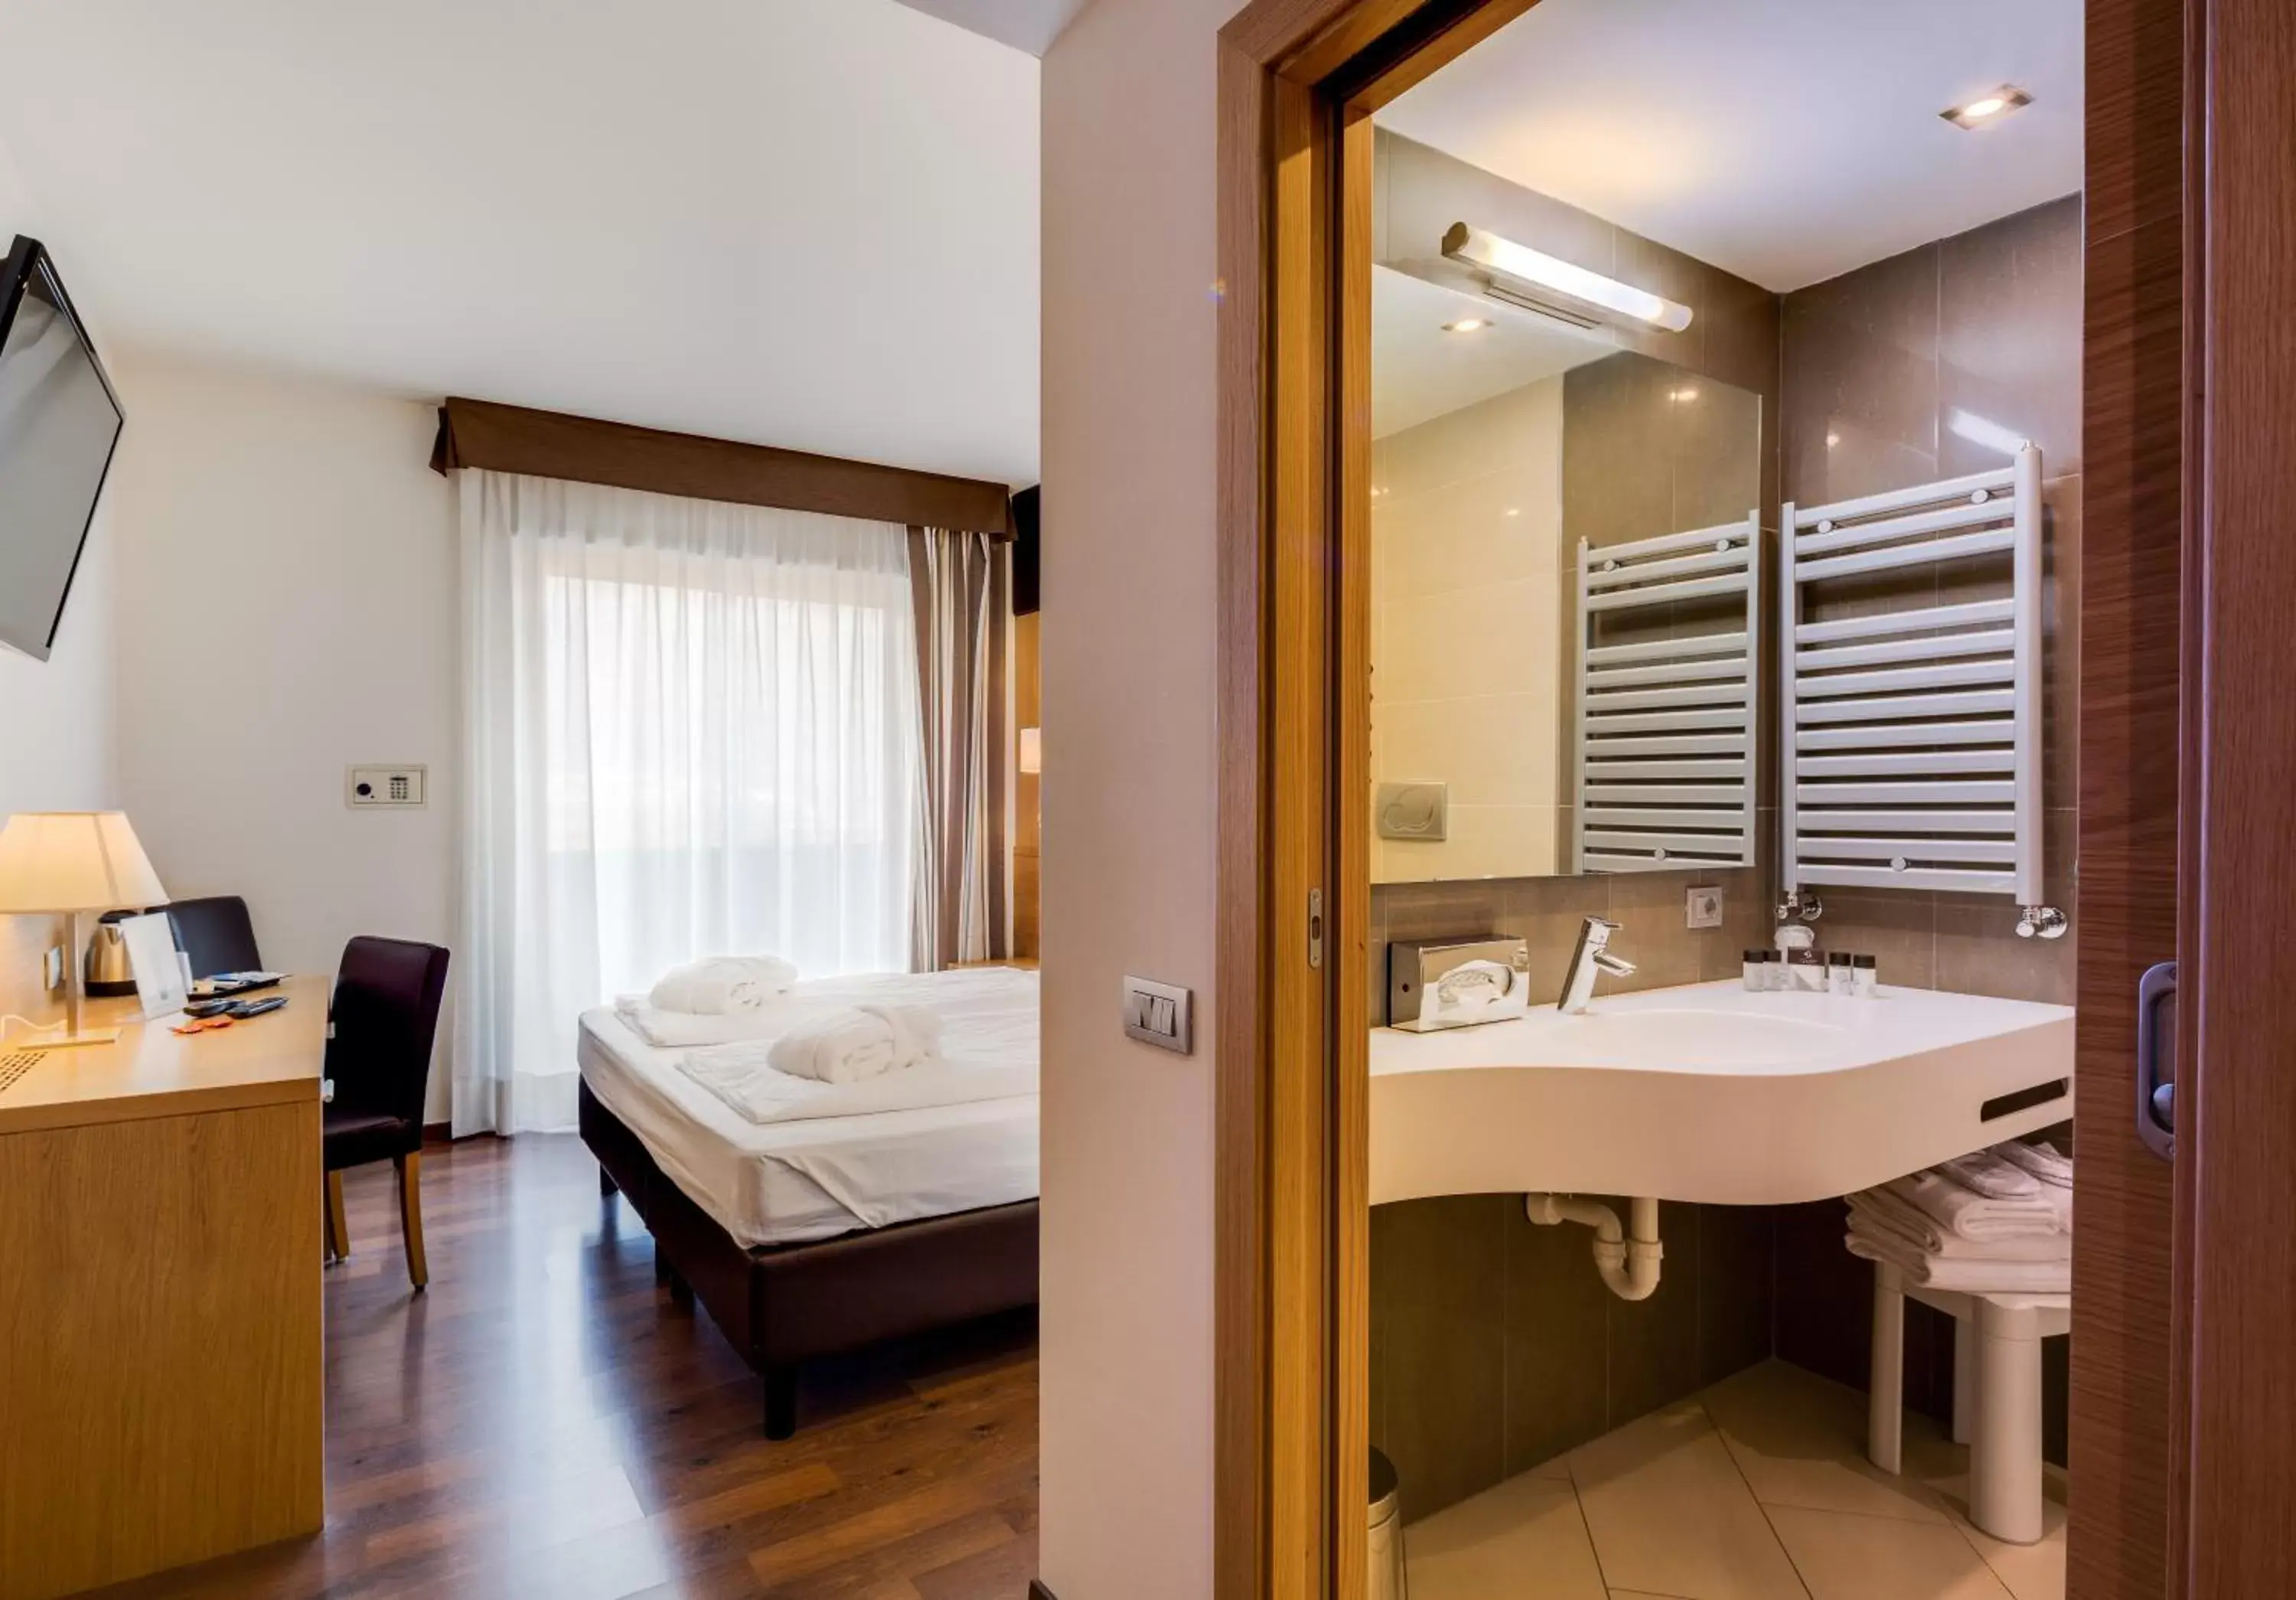 Coffee/tea facilities, Bathroom in Best Western Hotel Adige